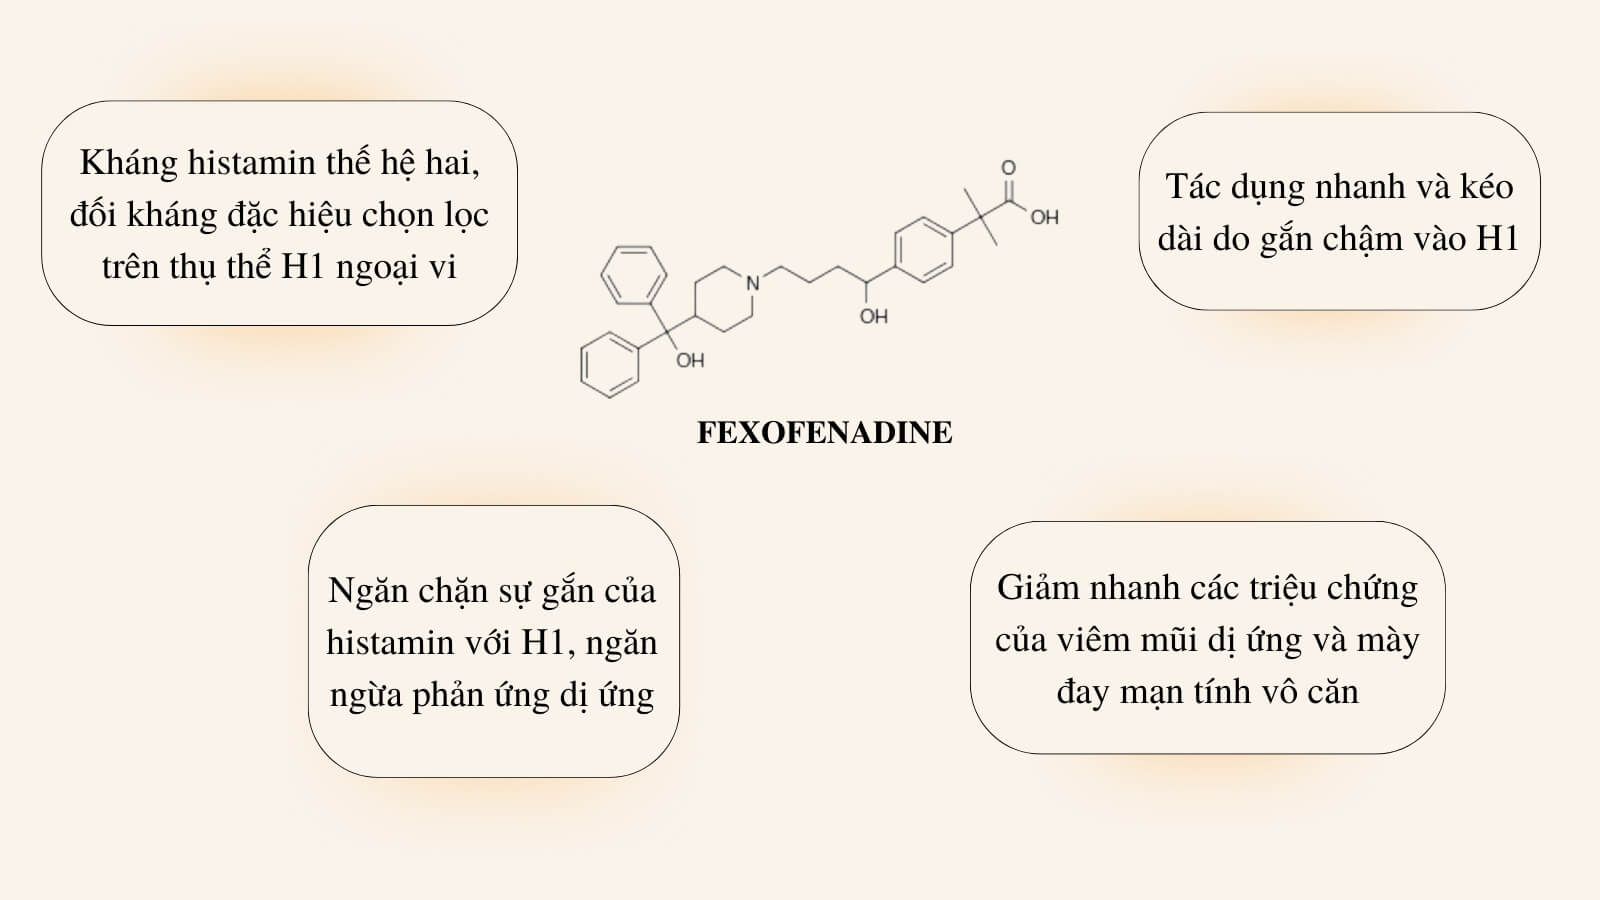 Fexofenadin ngăn ngừa phản ứng dị ứng, điều trị viêm mũi dị ứng, mày đay mạn tính